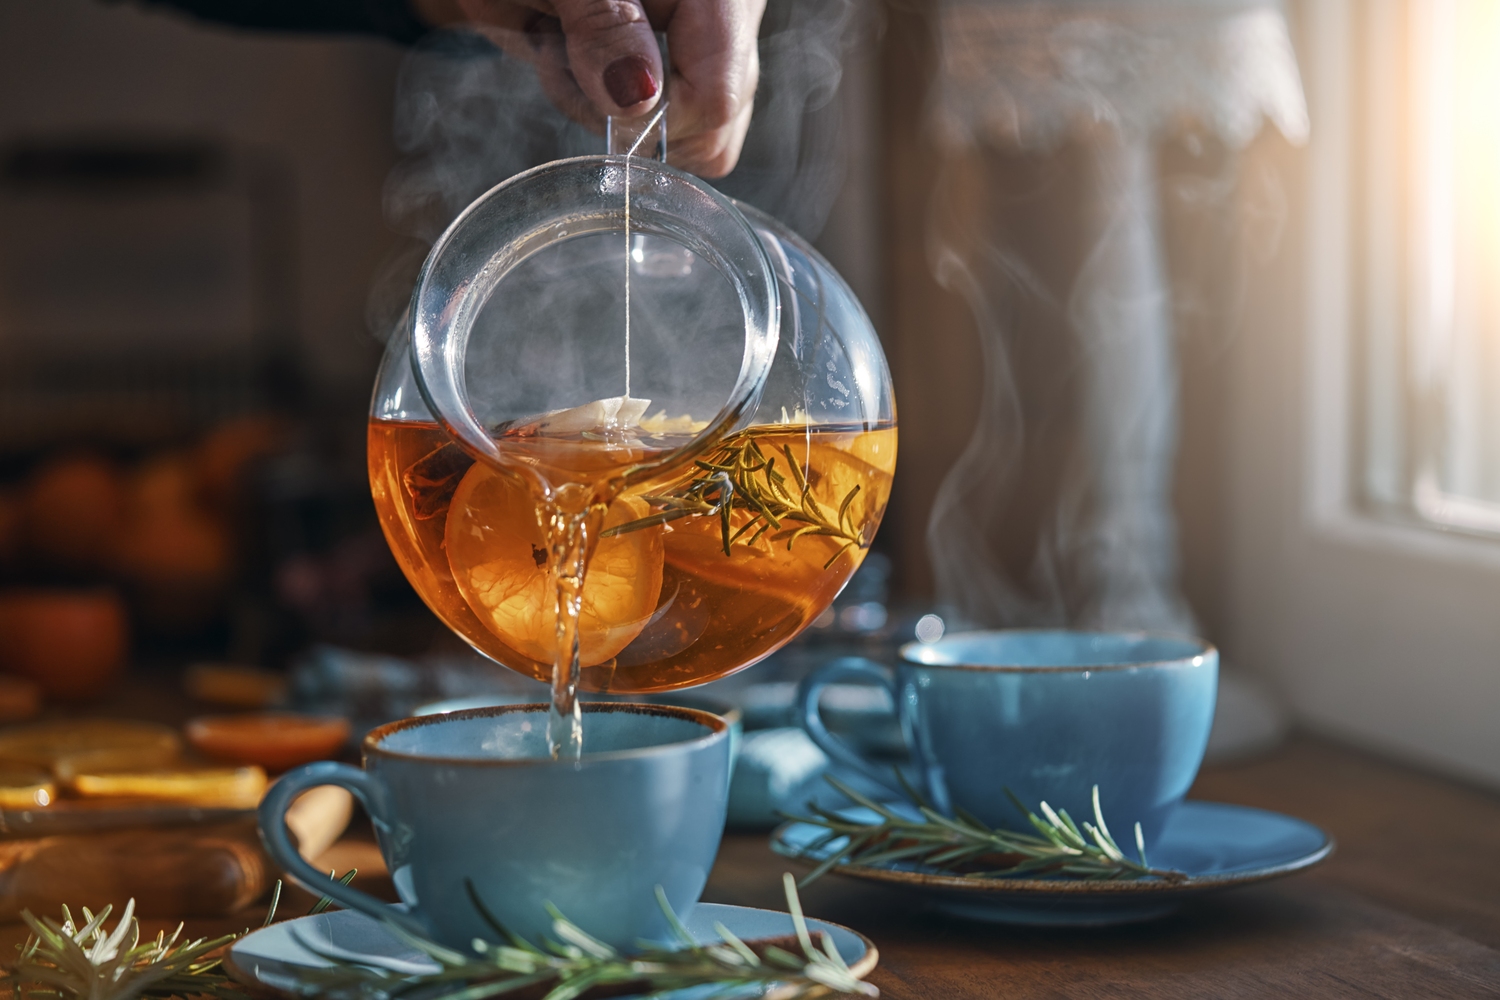 Thé vert, thé noir, thé blanc, thé rouge : quels sont leurs bienfaits ? -  Vulgaris-medical